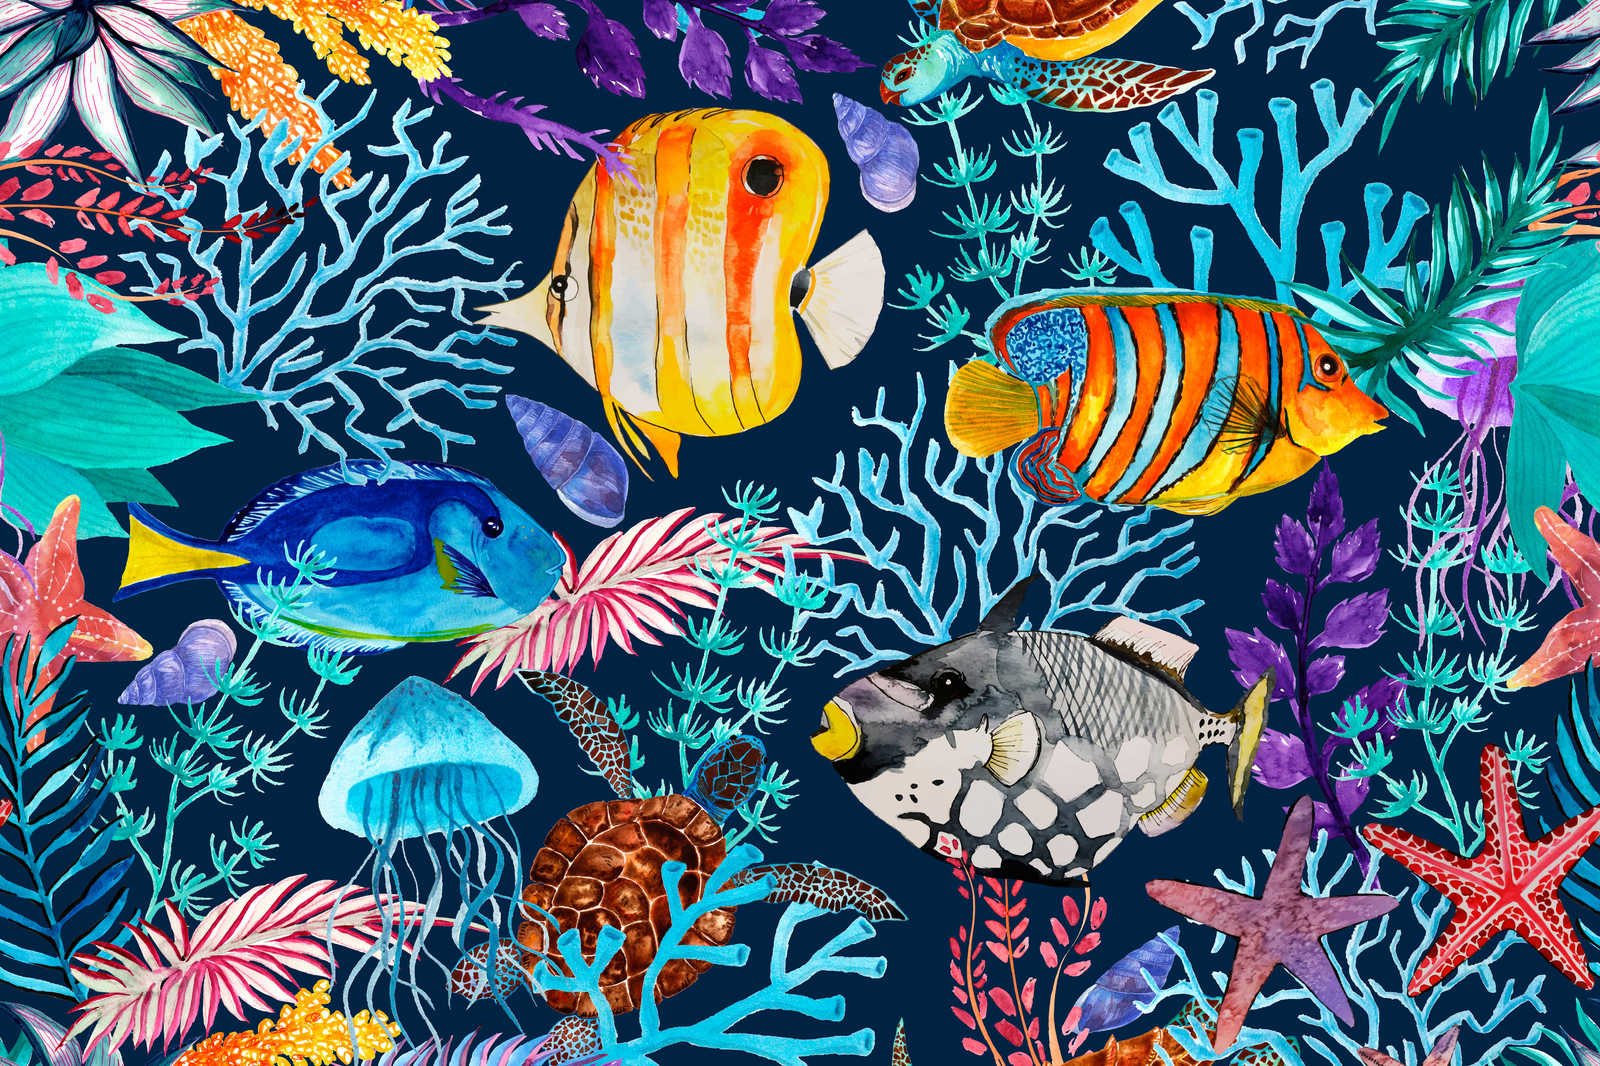             Unterwasser Leinwandbild mit bunten Fischen & Seesternen – 1,20 m x 0,80 m
        